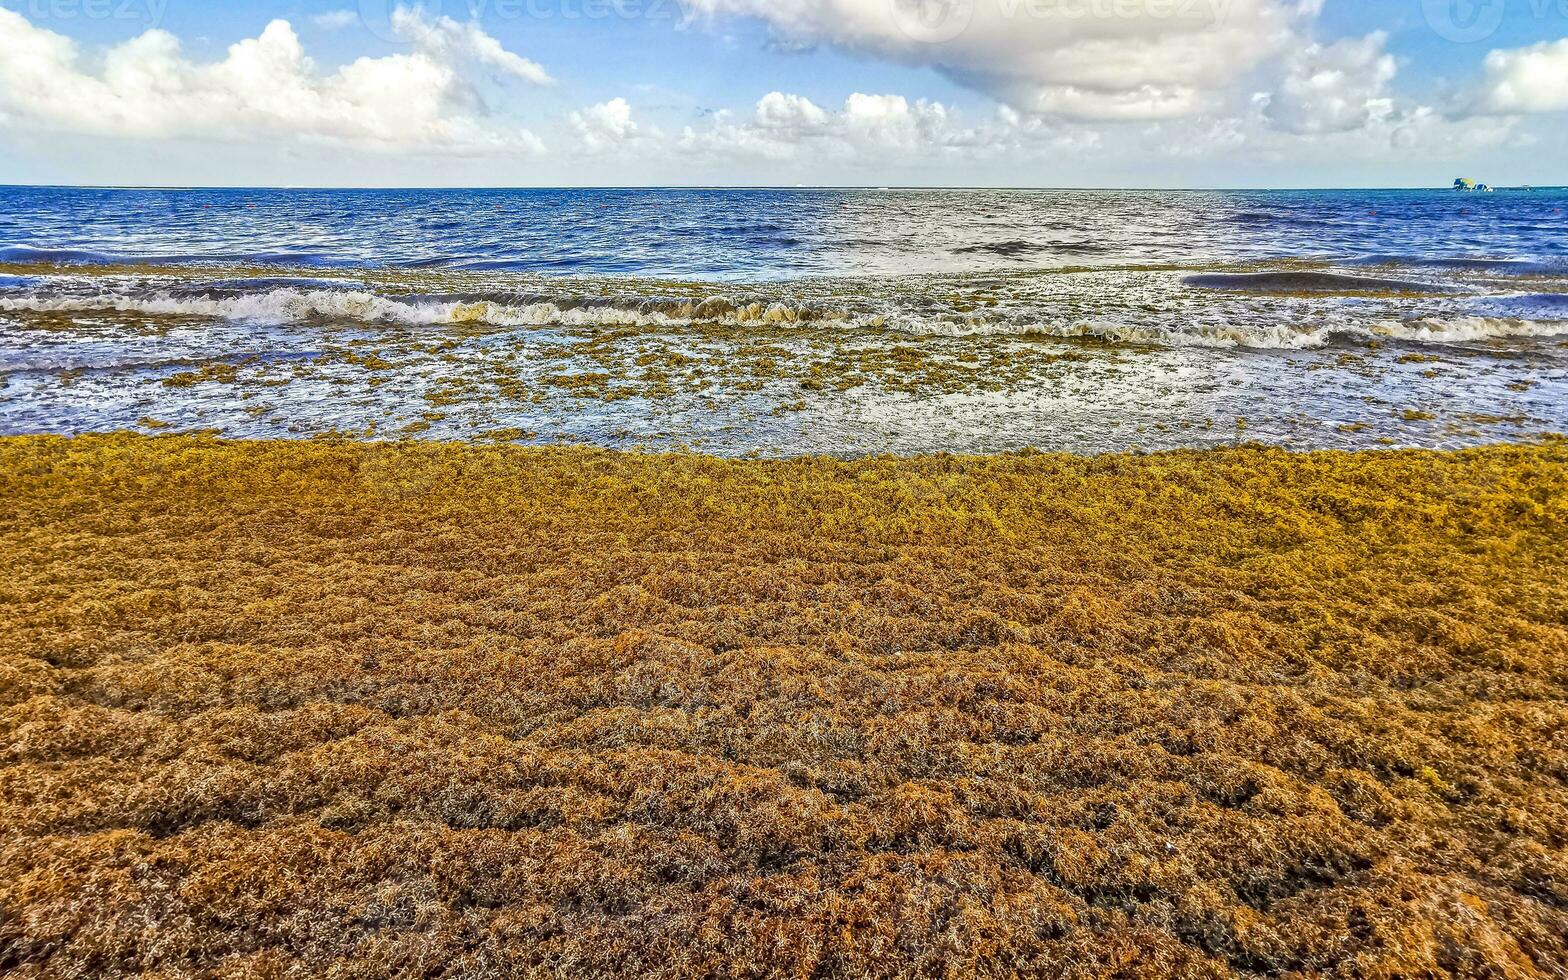 wunderschöner karibikstrand total dreckig dreckig dreckig algenproblem mexiko. foto